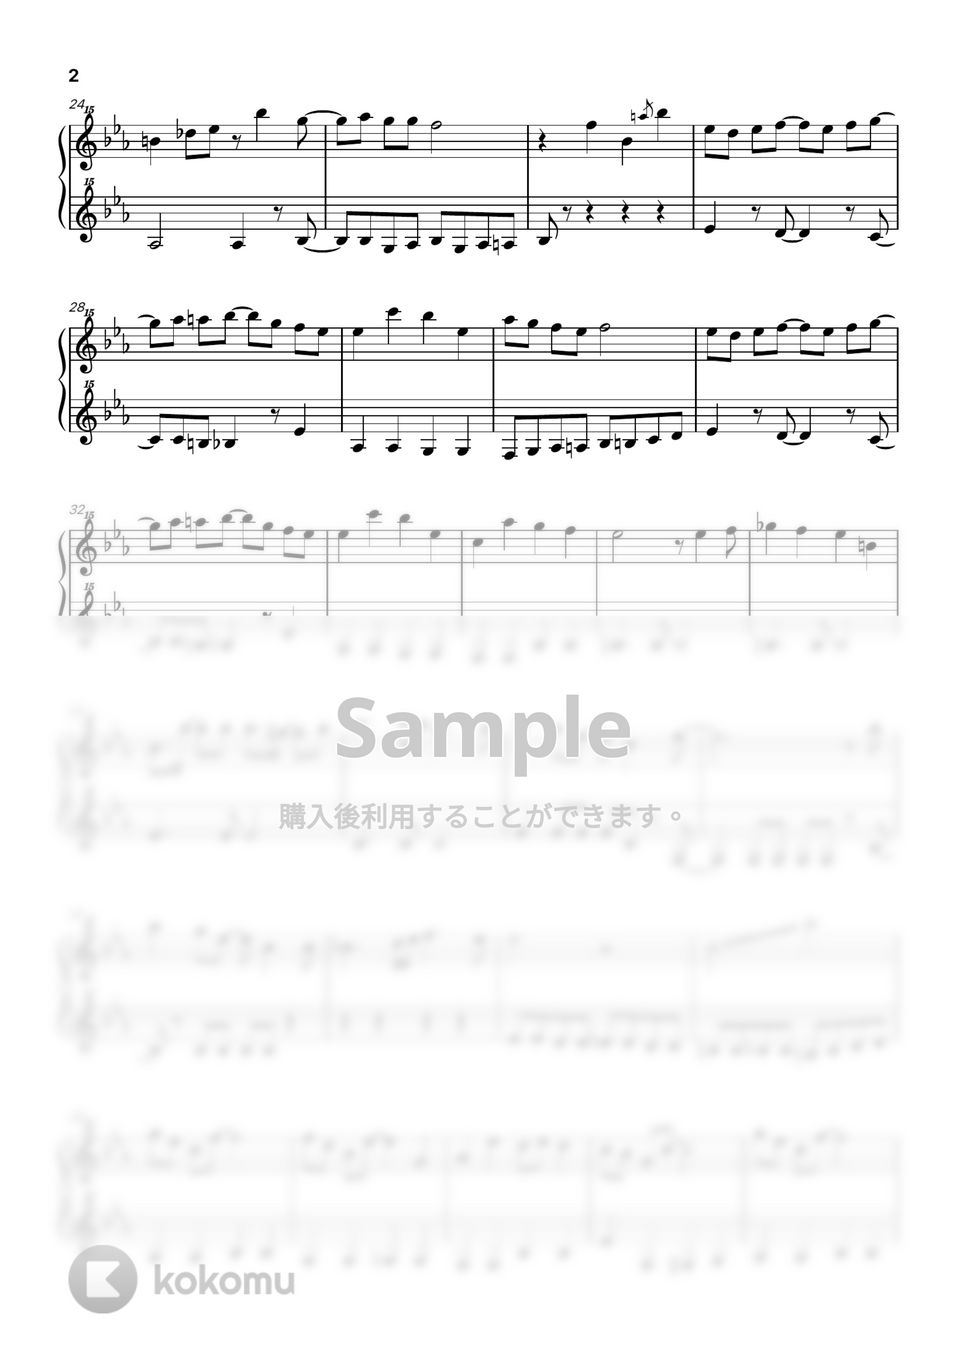 大石 昌良 - ようこそジャパリパークへ (トイピアノ / 32鍵盤 / けものフレンズ) by 川西三裕